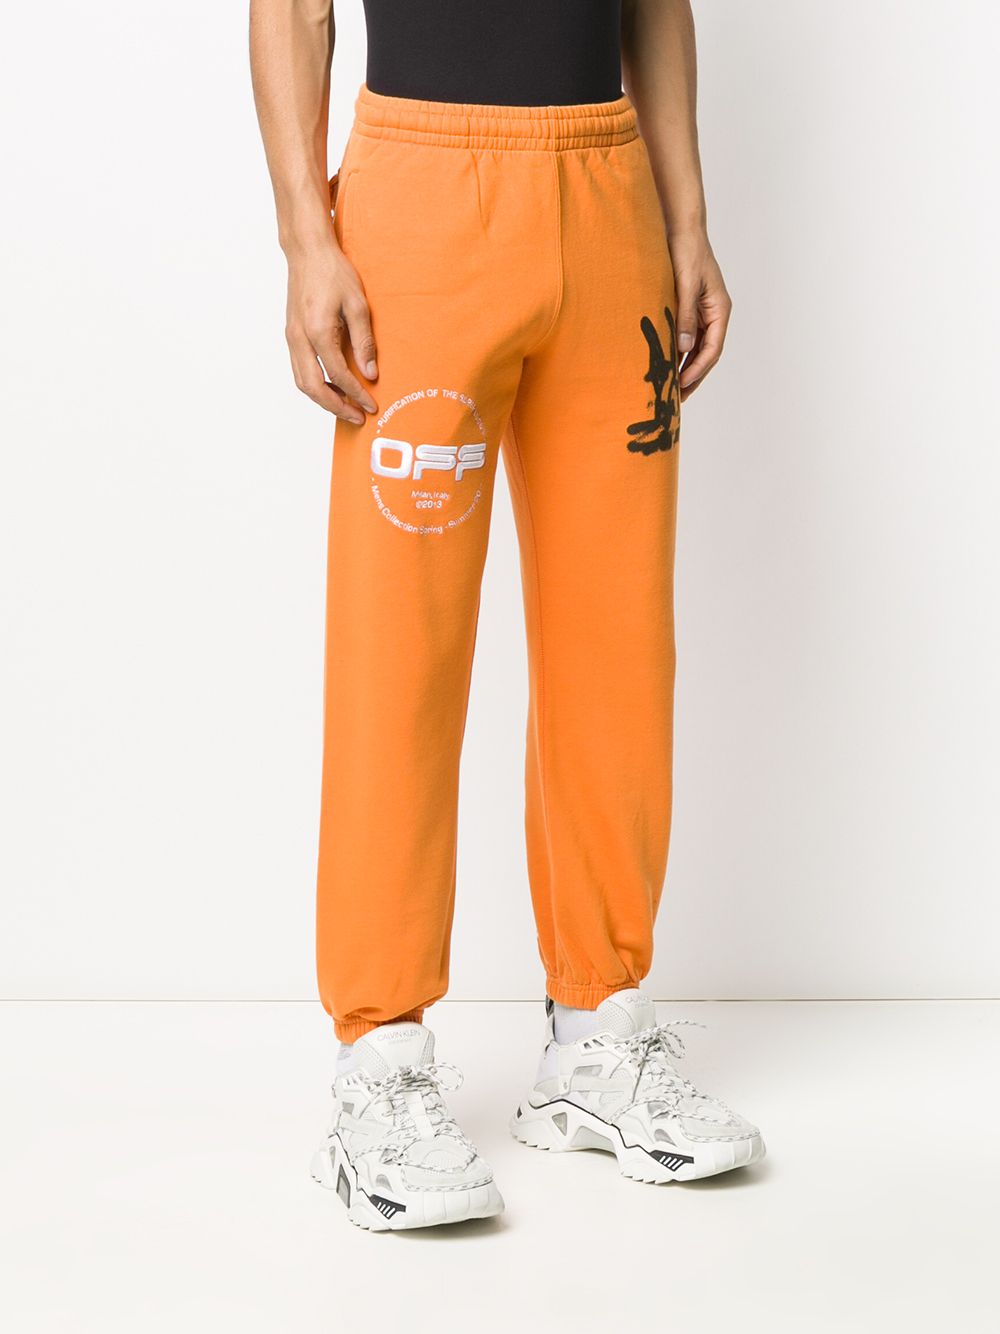 фото Off-white спортивные брюки с принтом diag cartoon